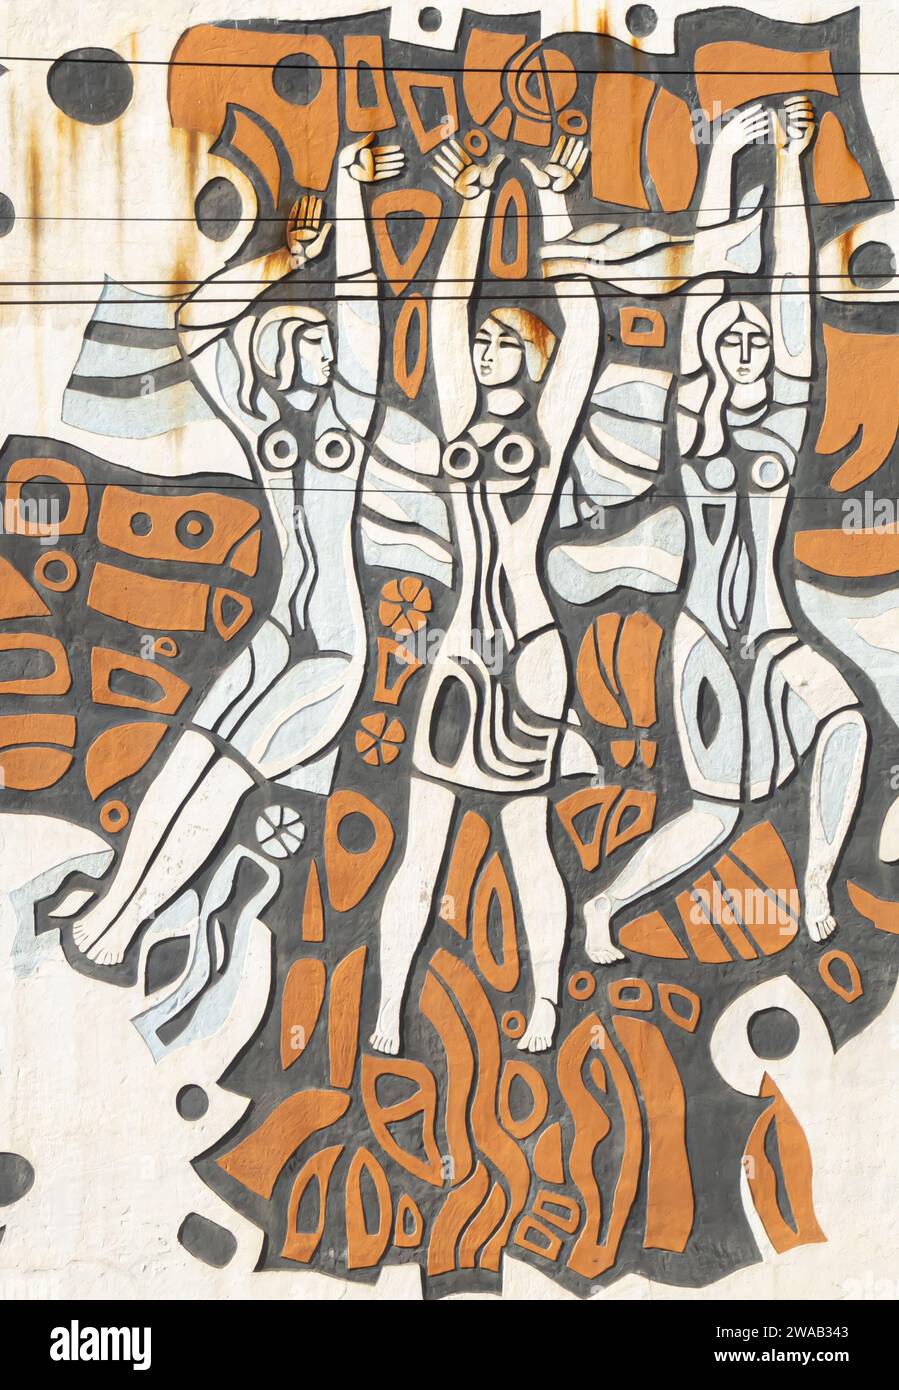 Sgraffiti mural de Simakov A. que representa a las mujeres kazajas, Almaty Kazajstán, edificio de Bacchus (antigua fábrica de champán) Foto de stock